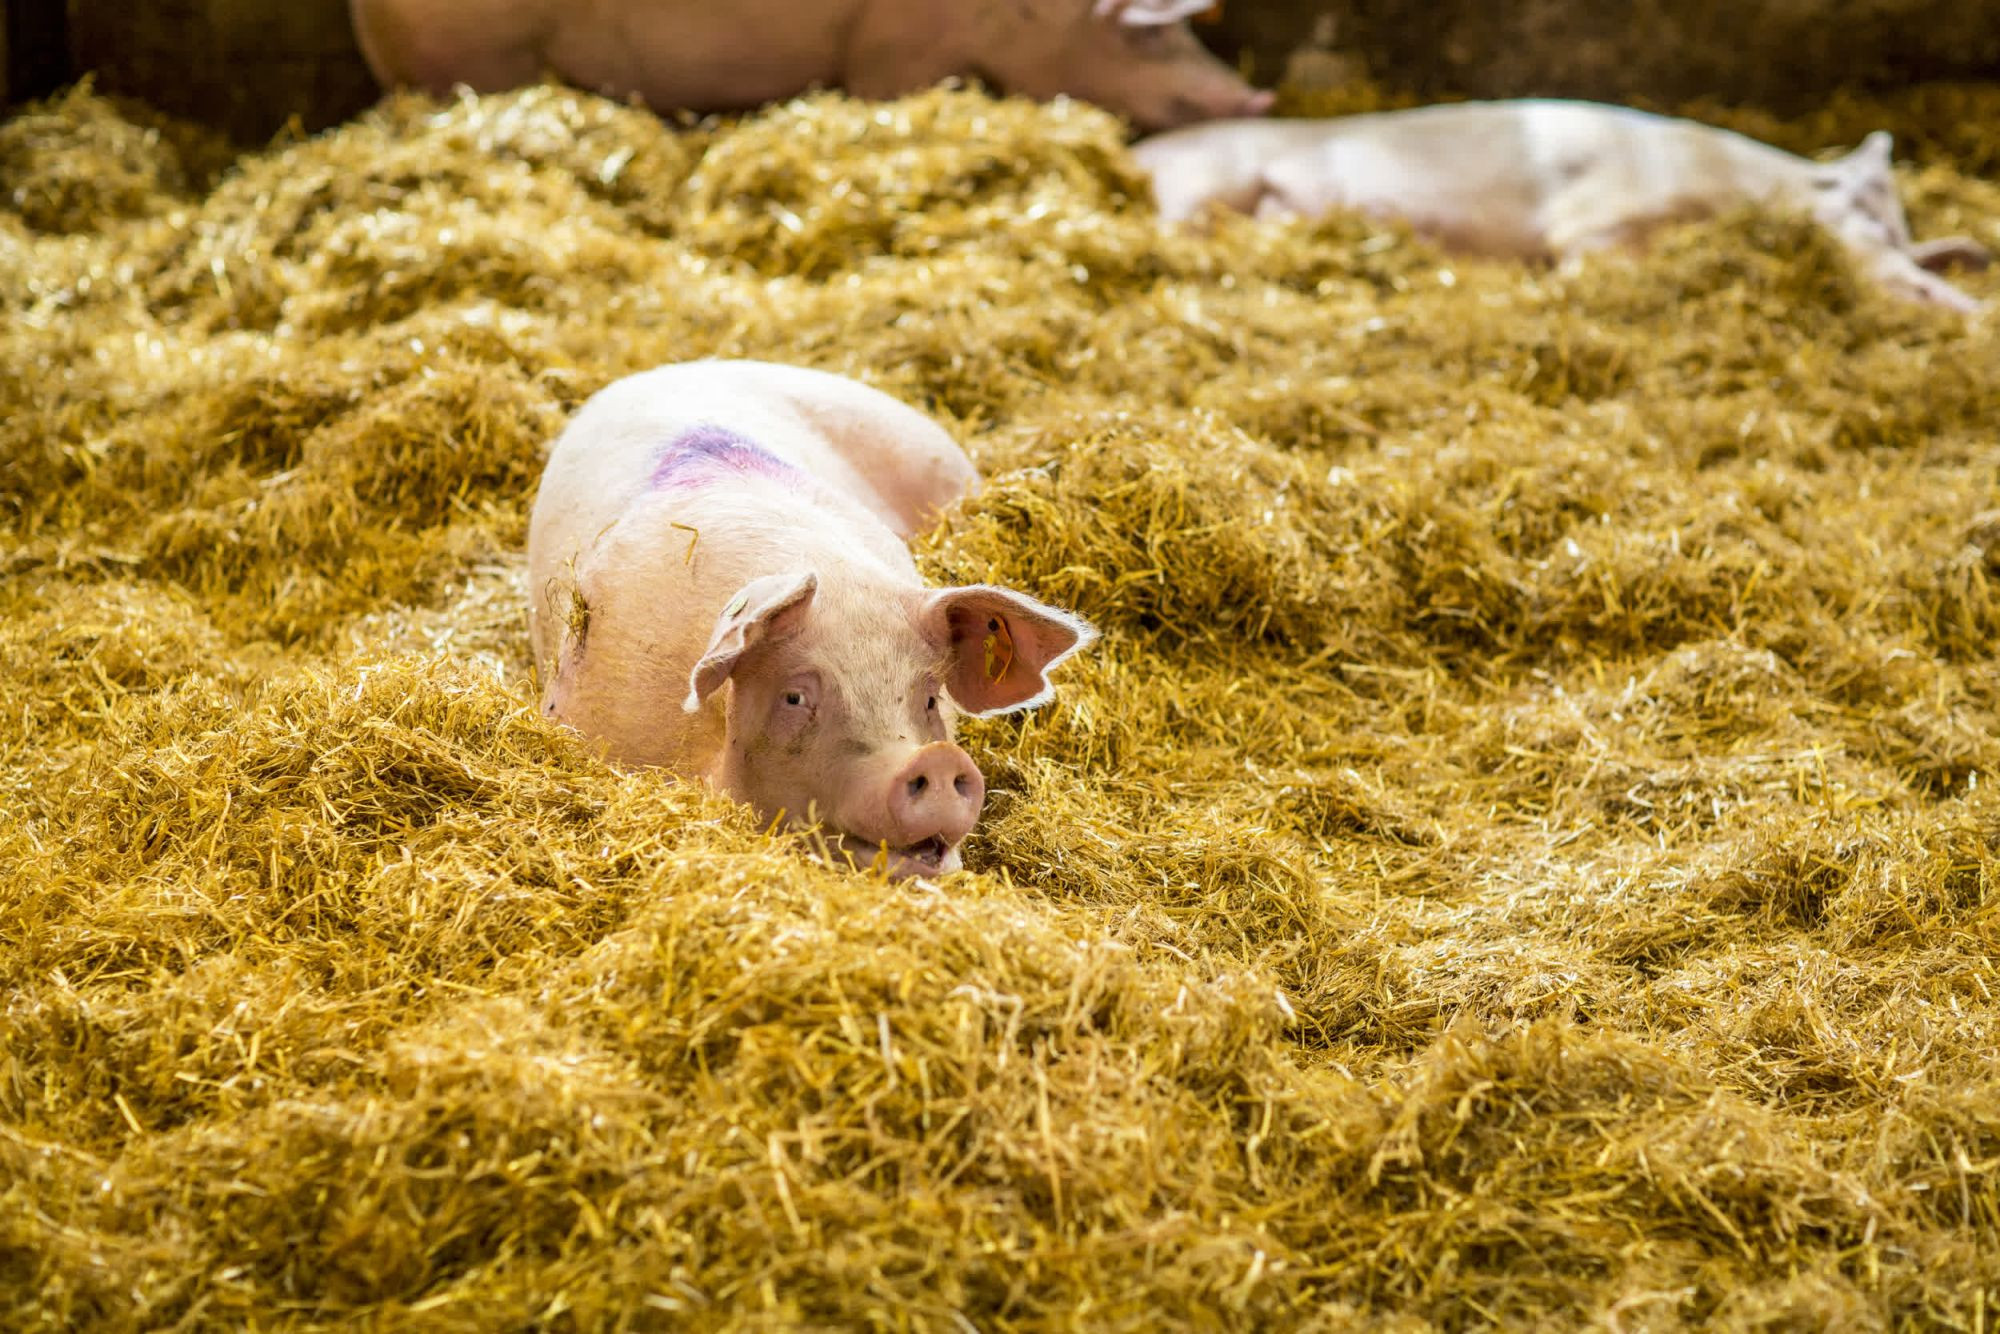 Pig in a higher welfare farm